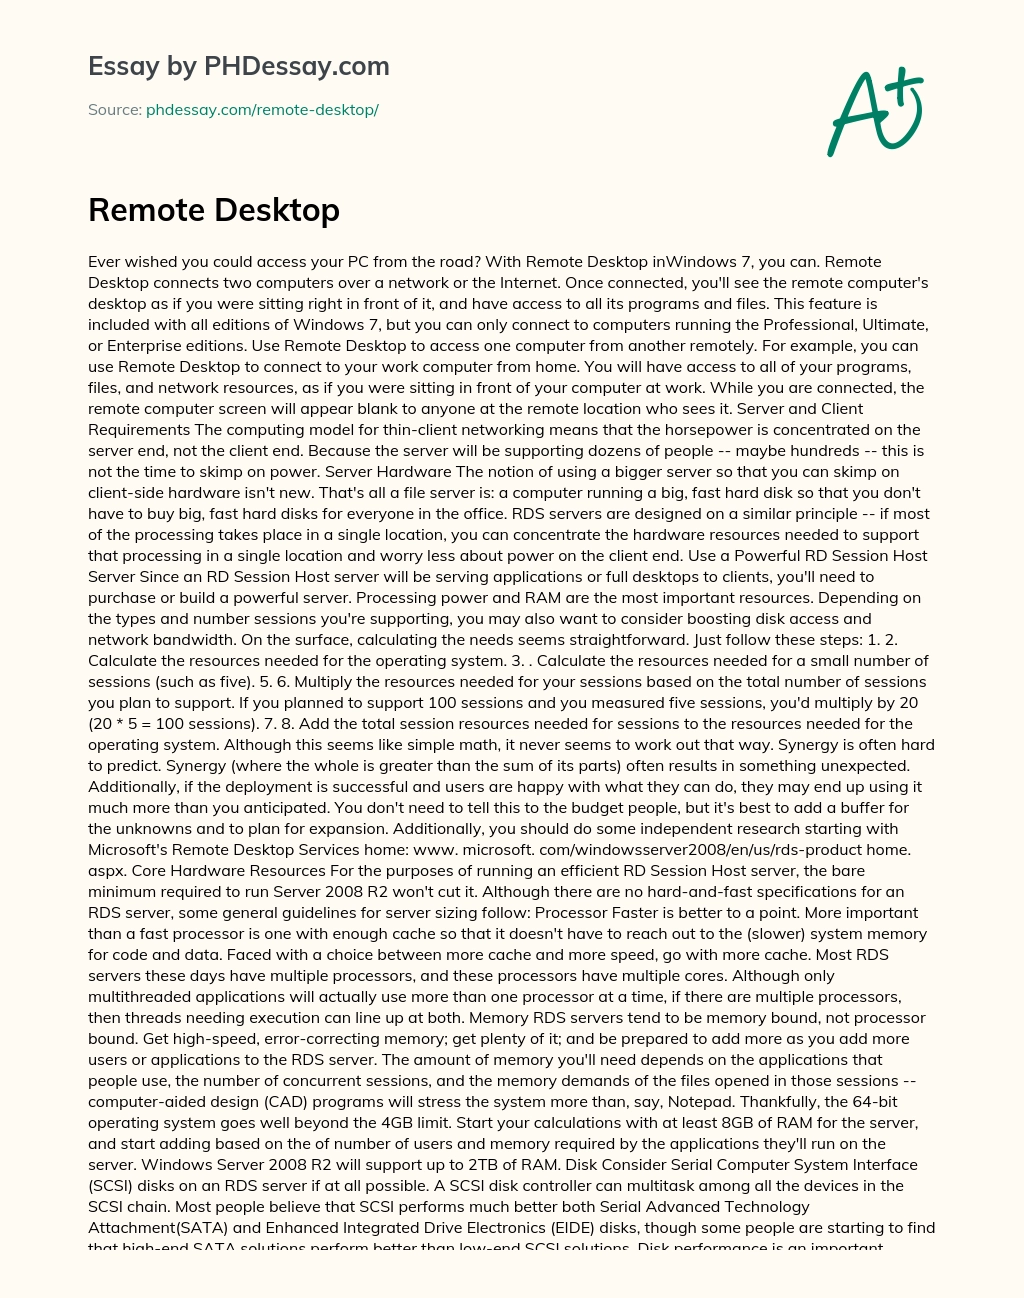 Remote Desktop essay